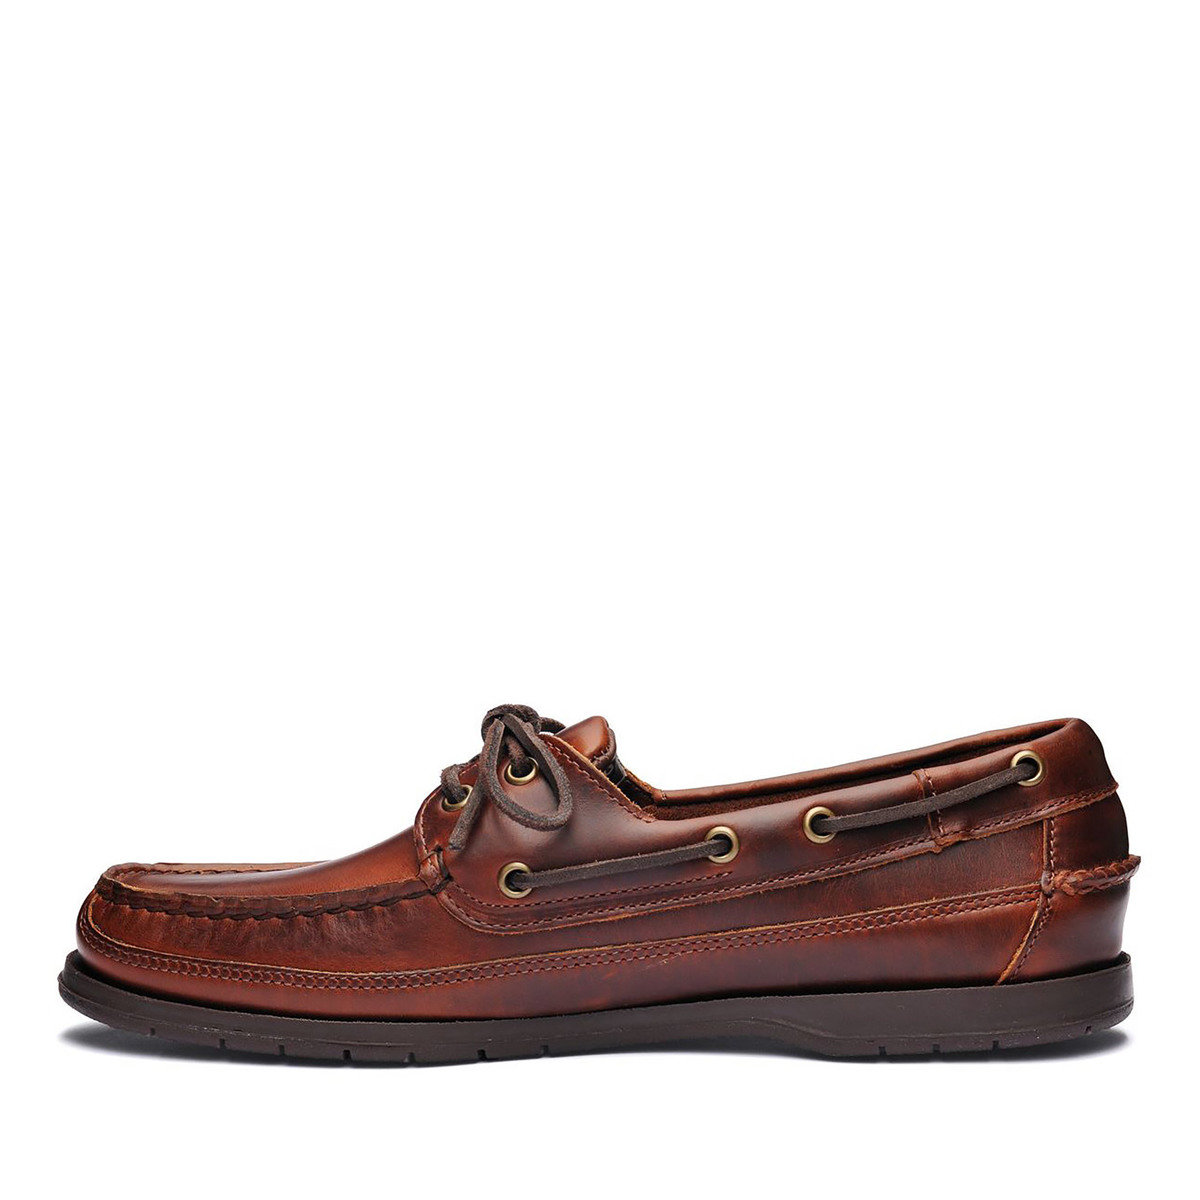 Schooner Waxed Leather Boat Shoe